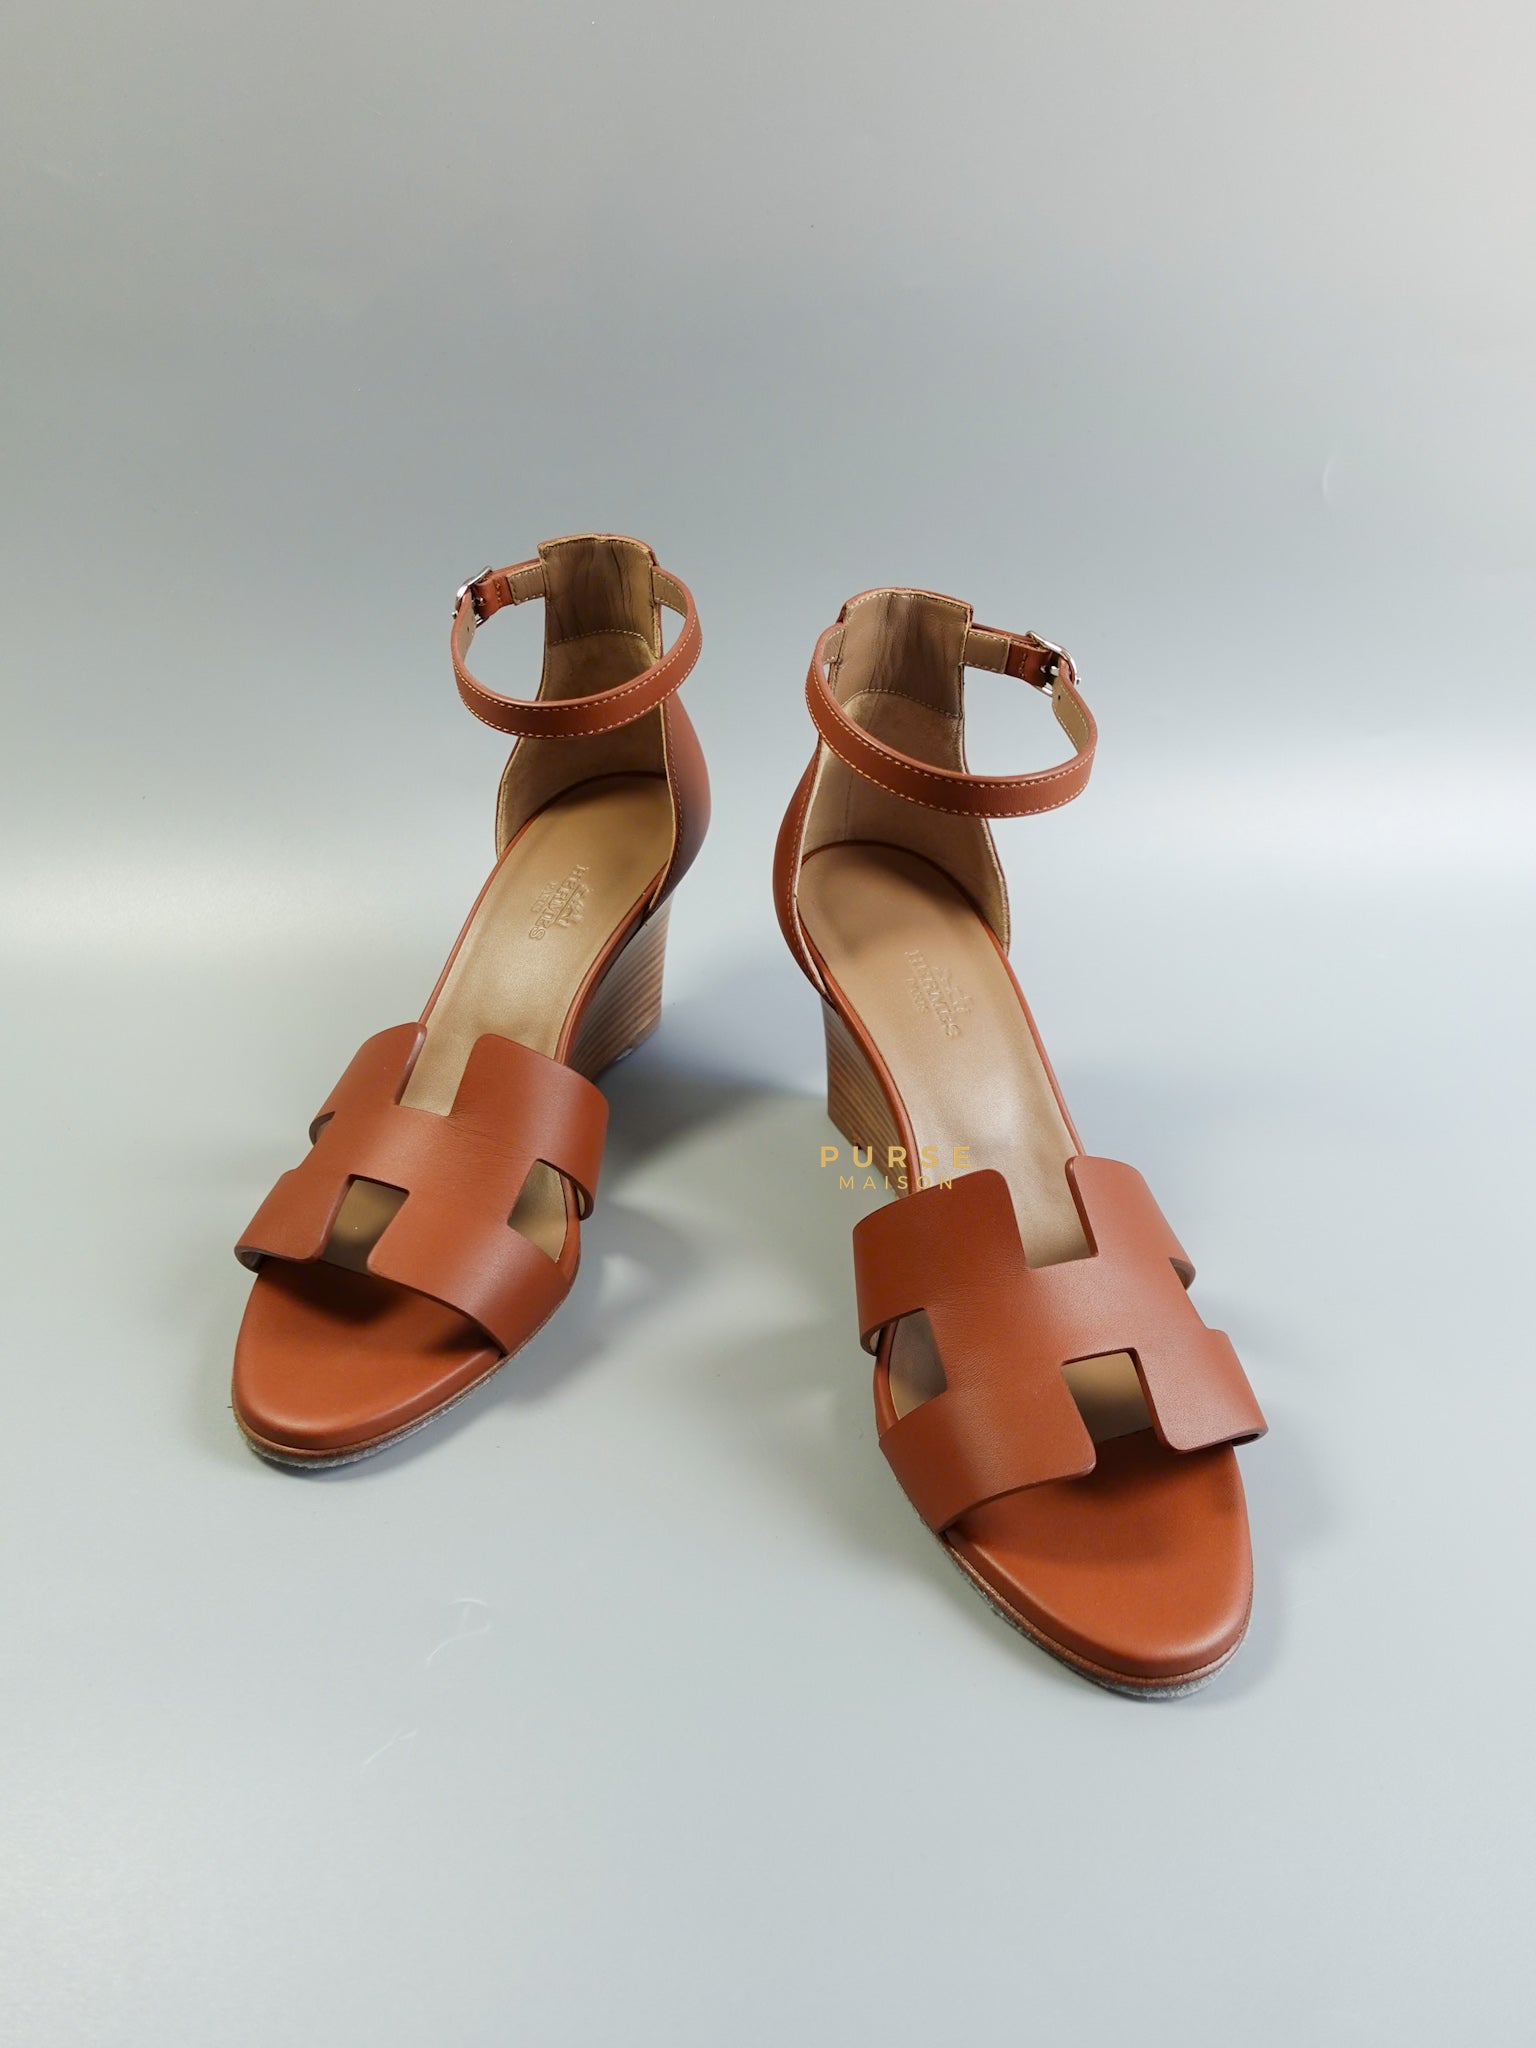 Legend Wedge Ankle Strap Sandals Size 39 EU (25.5cm) | Purse Maison Luxury Bags Shop